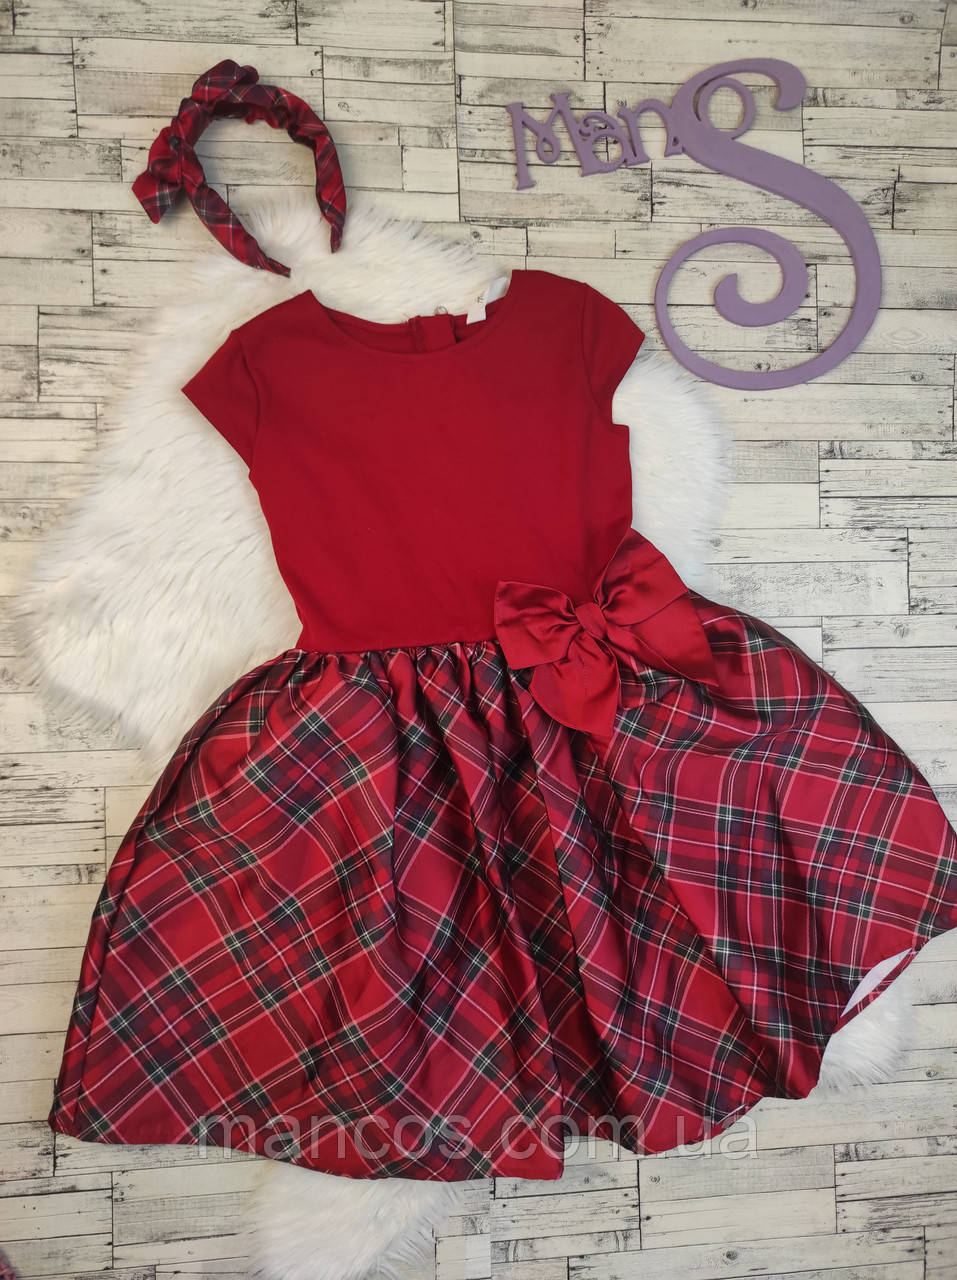 Дитяча сукня H&M для дівчинки червона з обручем пишна спідниця у клітинку Розмір 134-140